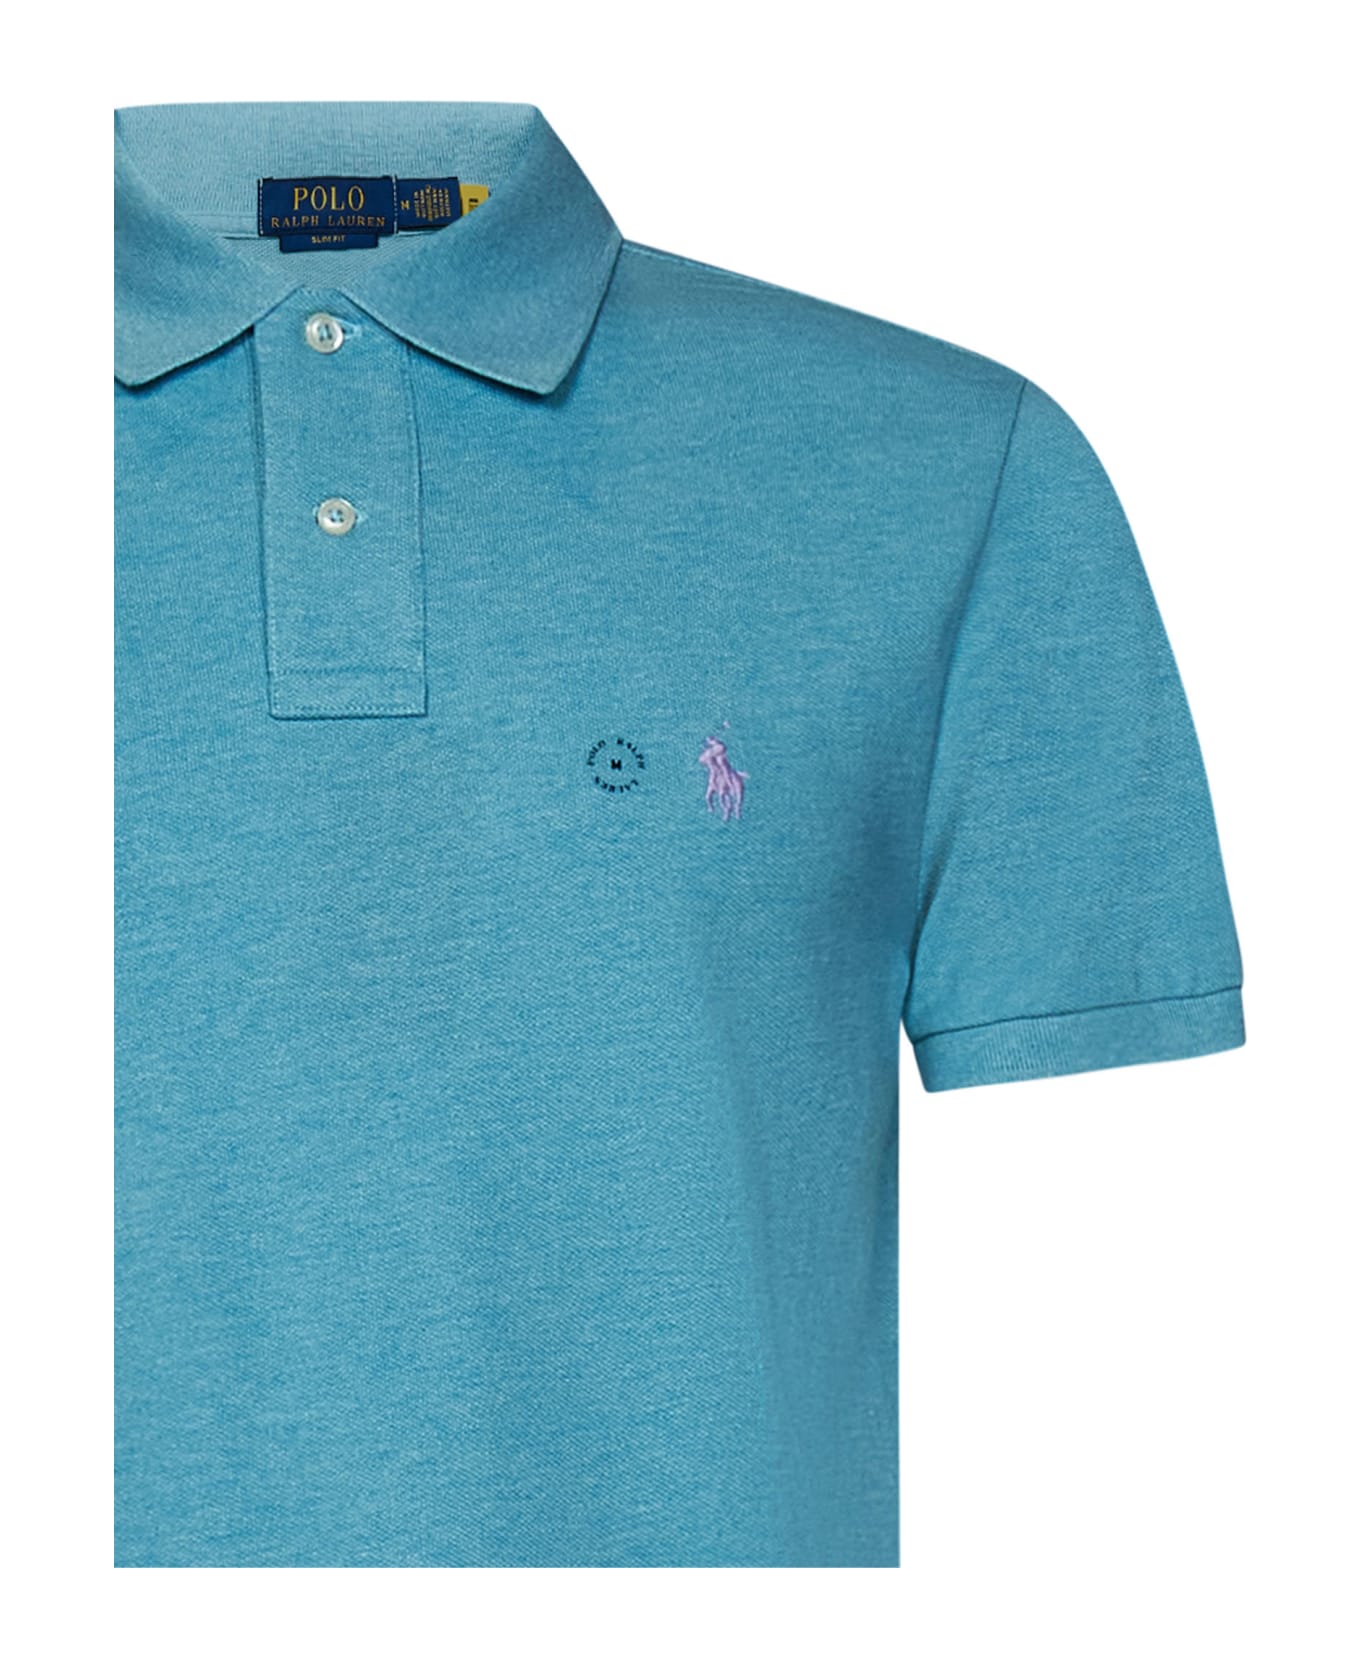 Polo Ralph Lauren Polo Shirt Polo Ralph Lauren - Light Blue ポロシャツ